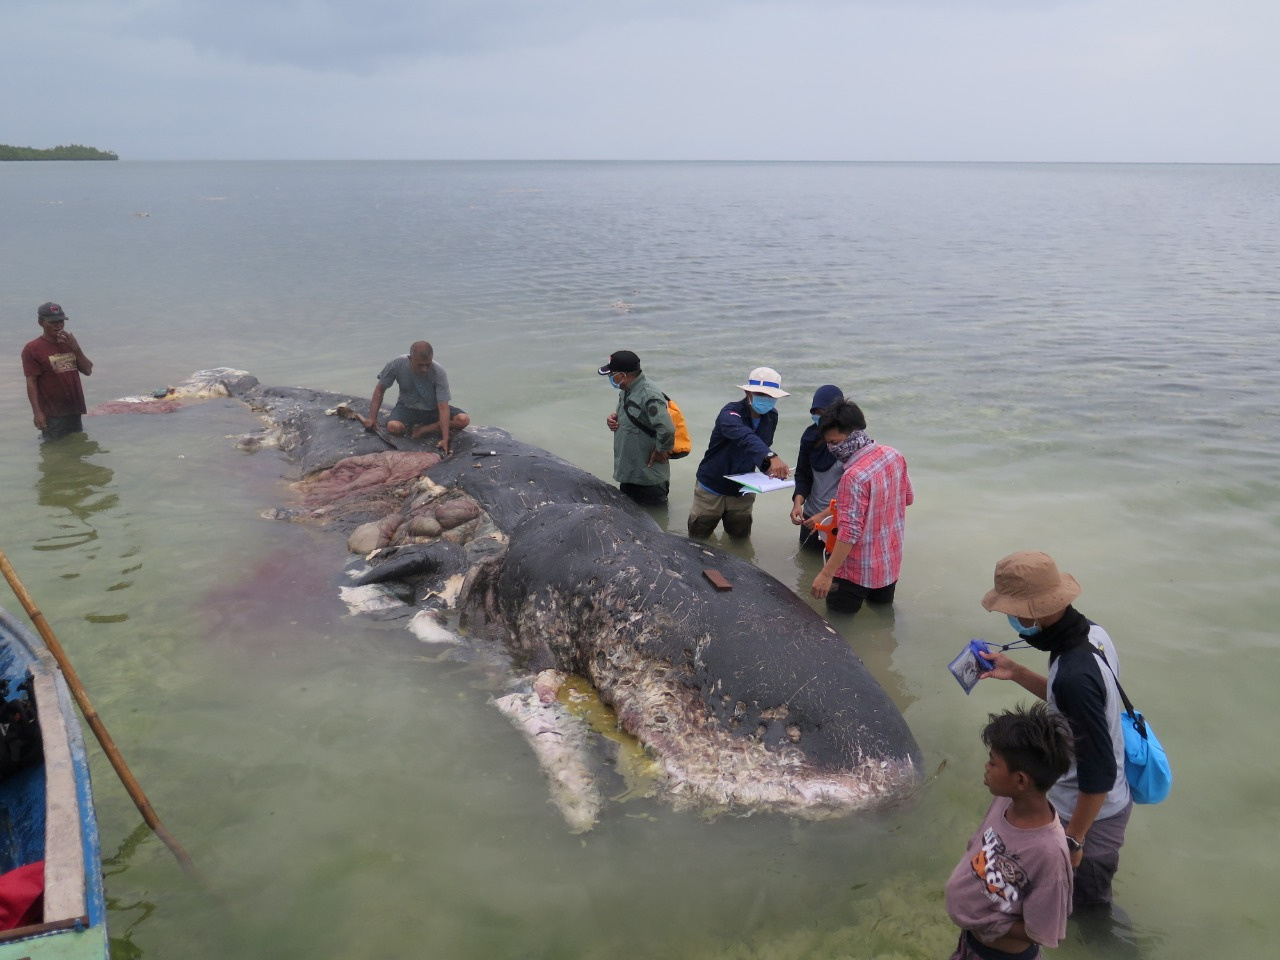 Hallan muerto a cachalote en Indonesia con botellas y vasos plásticos en el estómago (fotos)